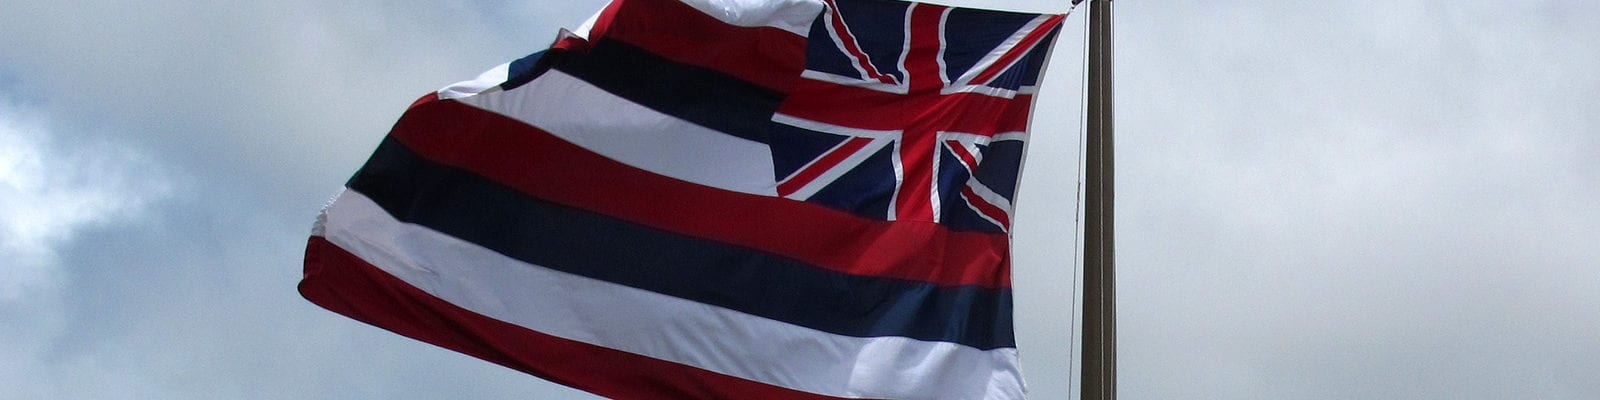 The flag of Hawaii flying above the bay in Honolulu, Hawaii.